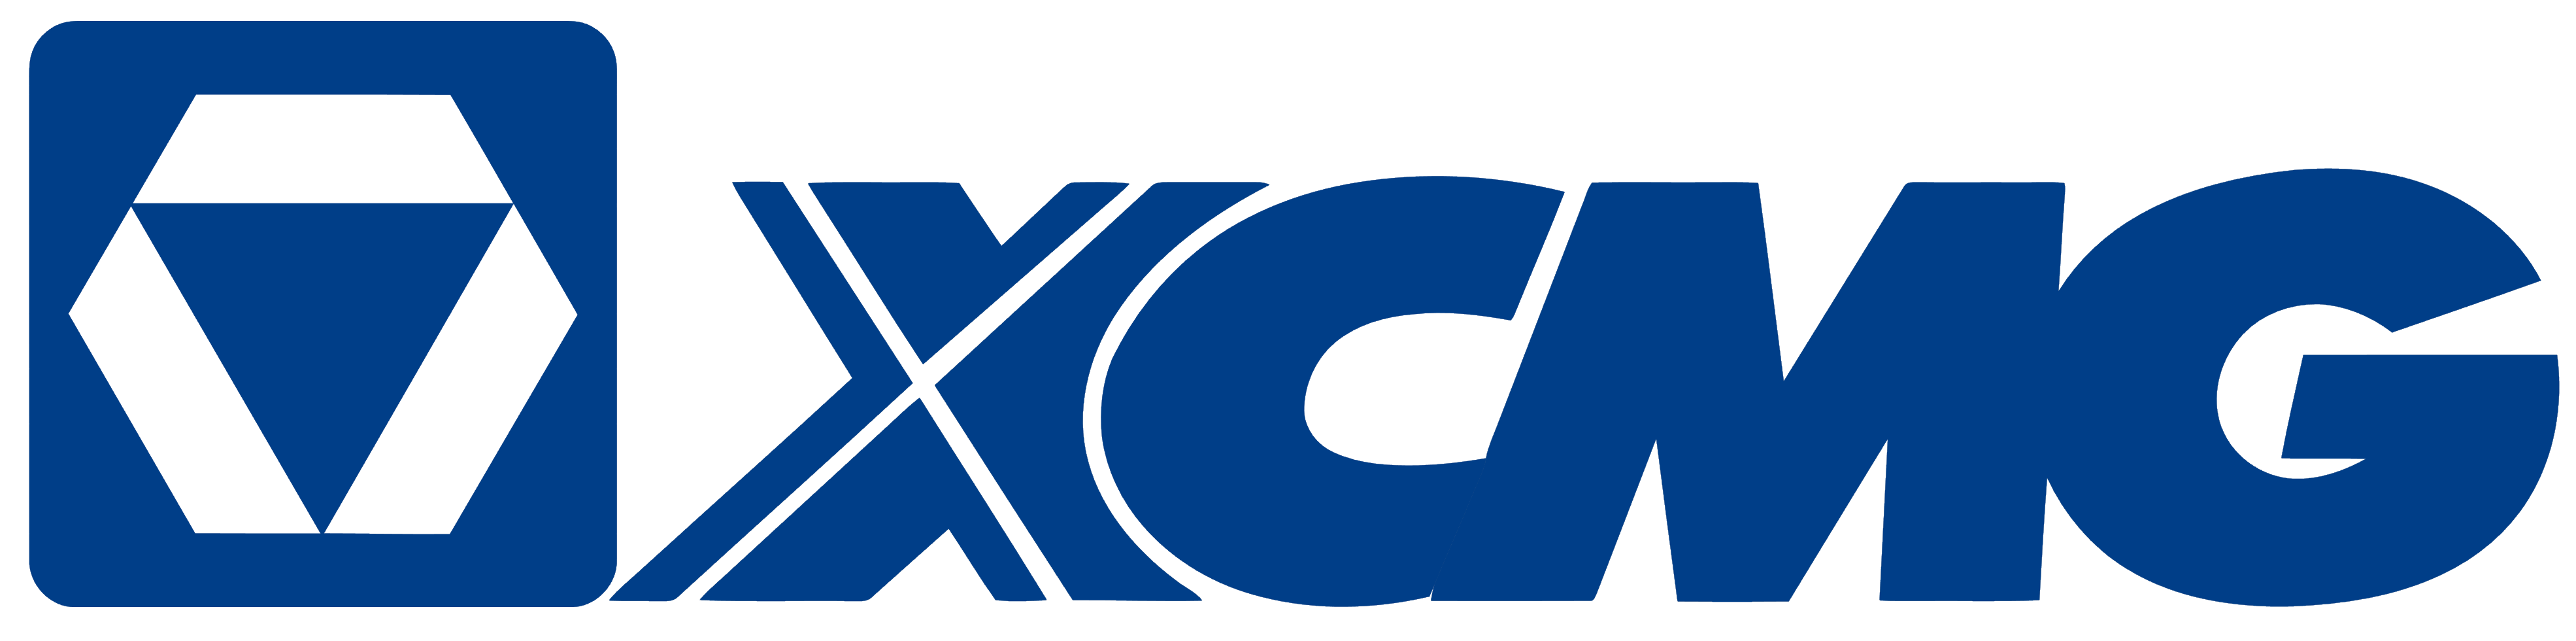 XCMG logo, logotype